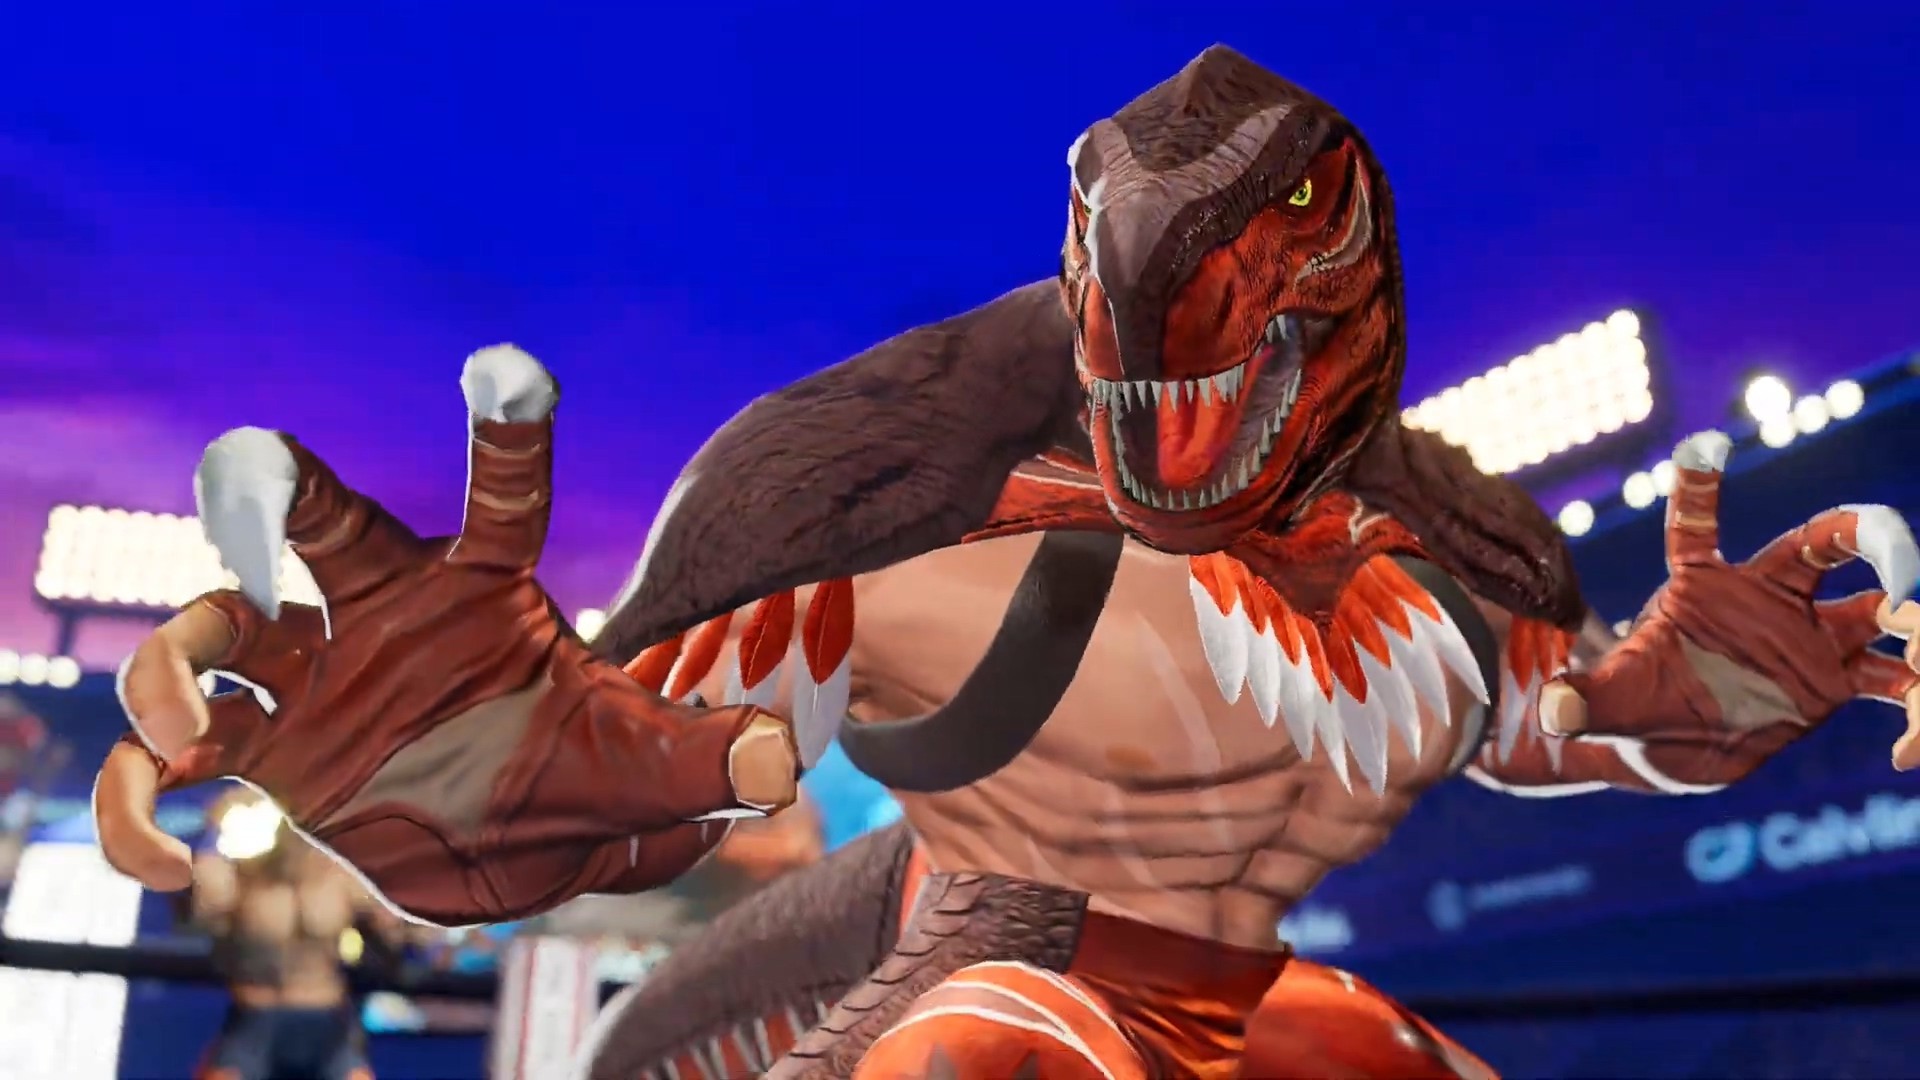 《拳皇15》發布暴龍王角色宣傳片 恐龍戰士從不摘下他的面具